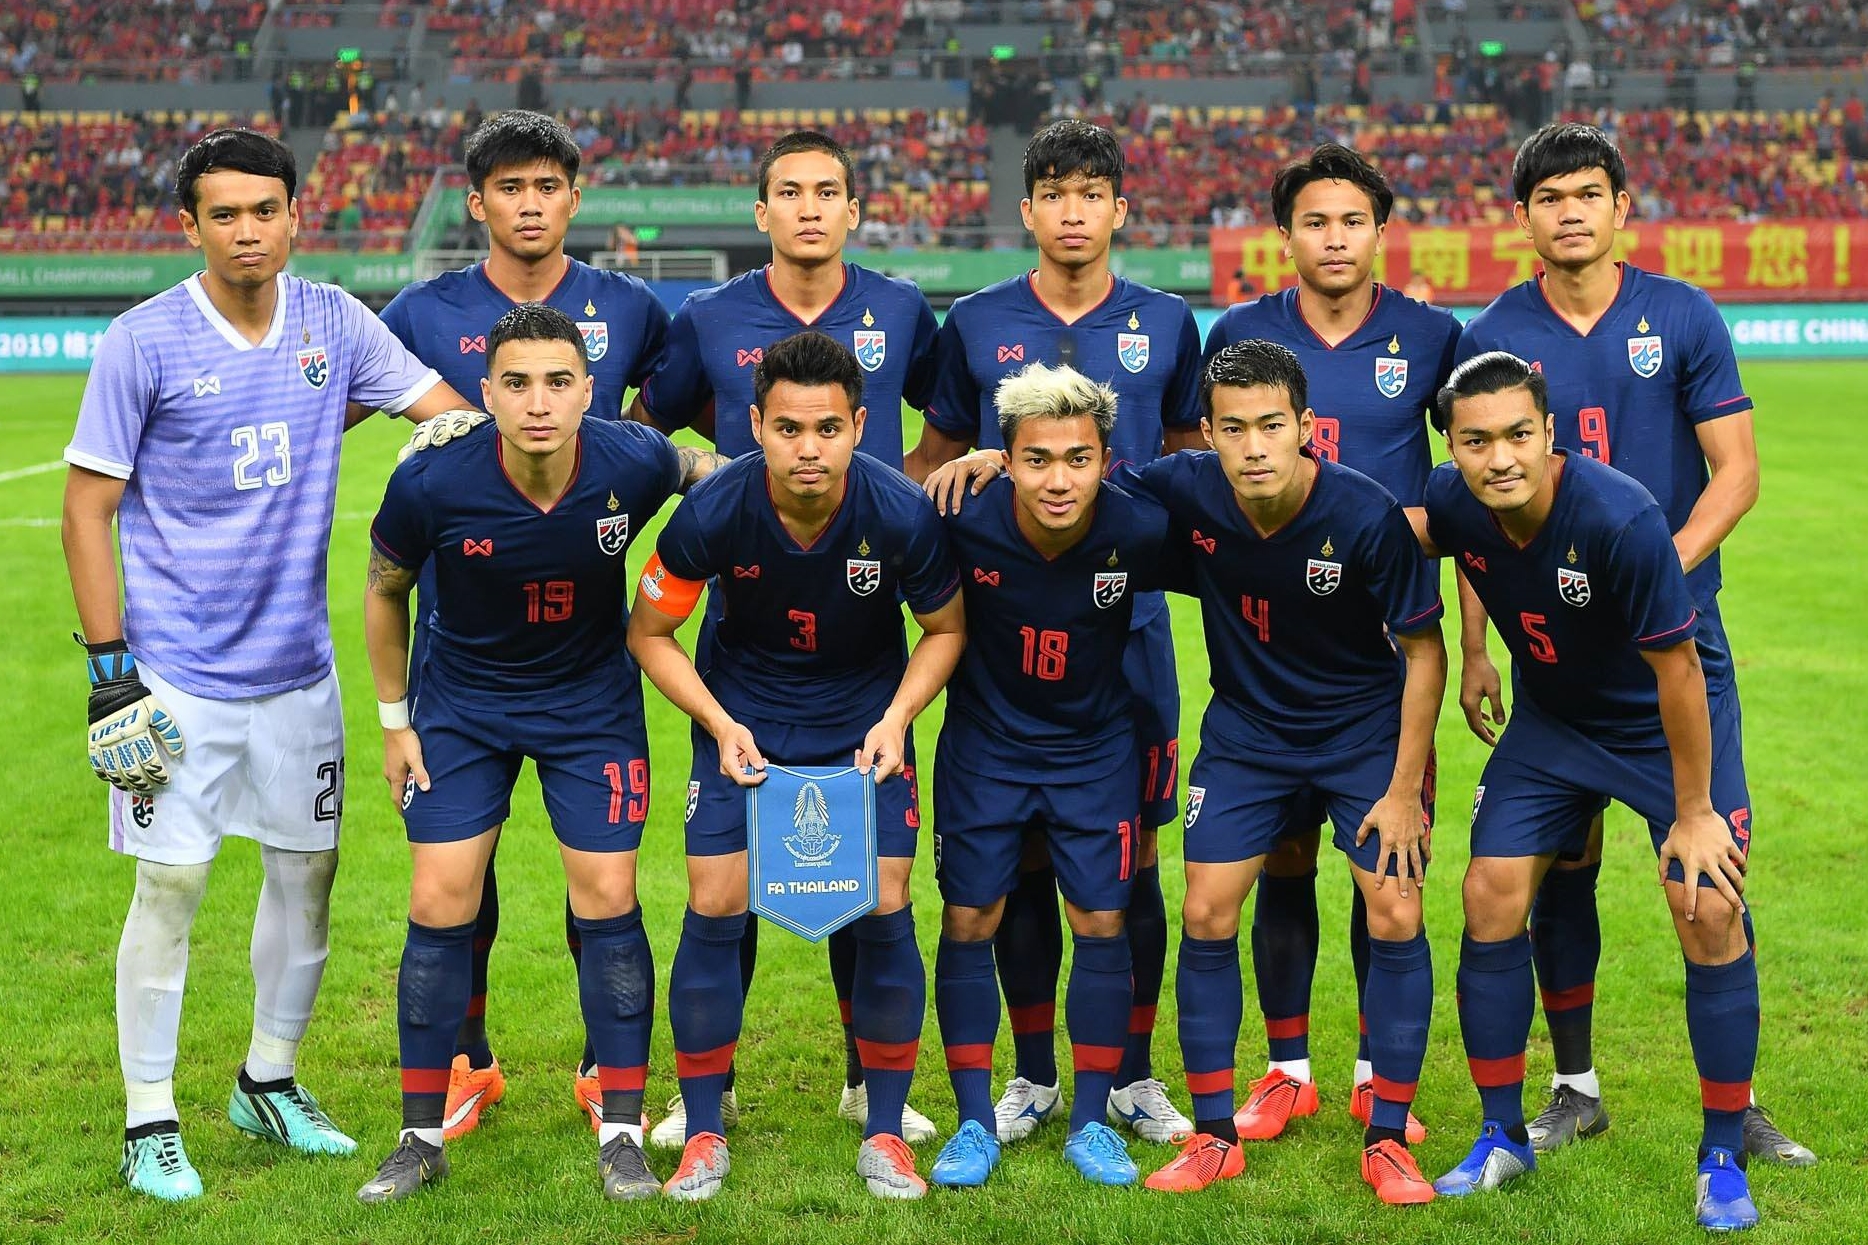 คิงส์ คัพ คิงส์คัพ 2019 ทีมชาติกือราเซา ทีมชาติอินเดีย ทีมชาติเวียดนาม ทีมชาติไทย